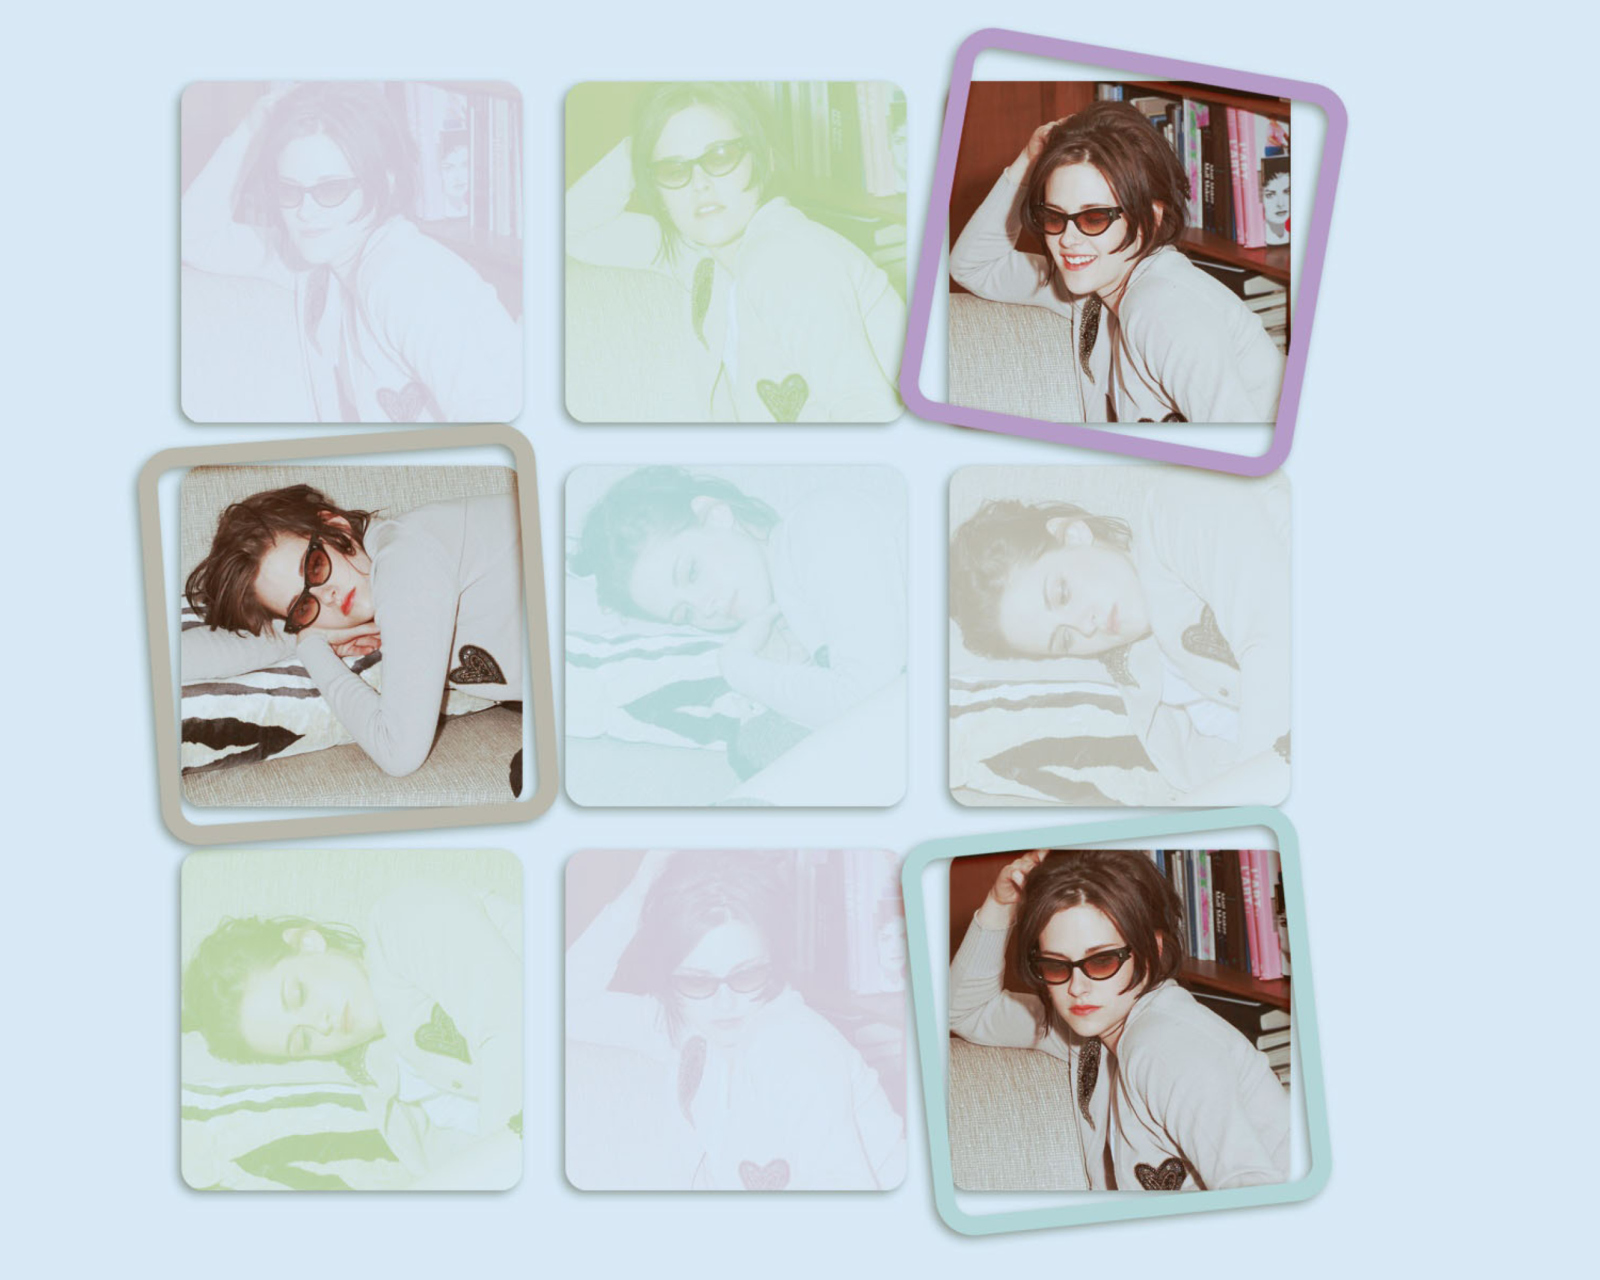 Kristen Stewart Wearing Glasses wallpaper 1600x1280